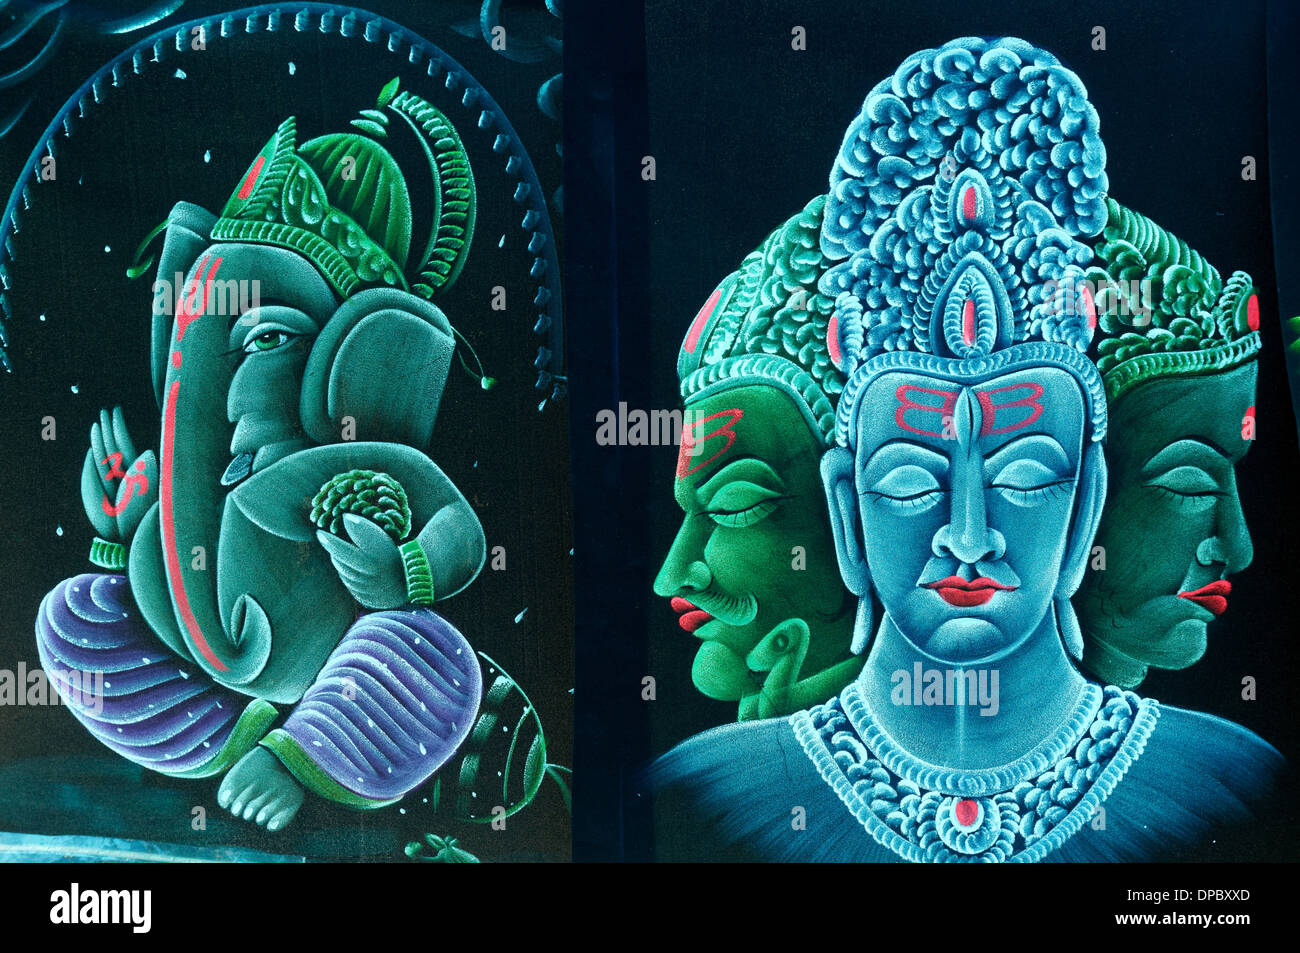 Des images hautes en couleur de l'éléphant Ganesh Dieu et le dieu de la création Brahma Banque D'Images